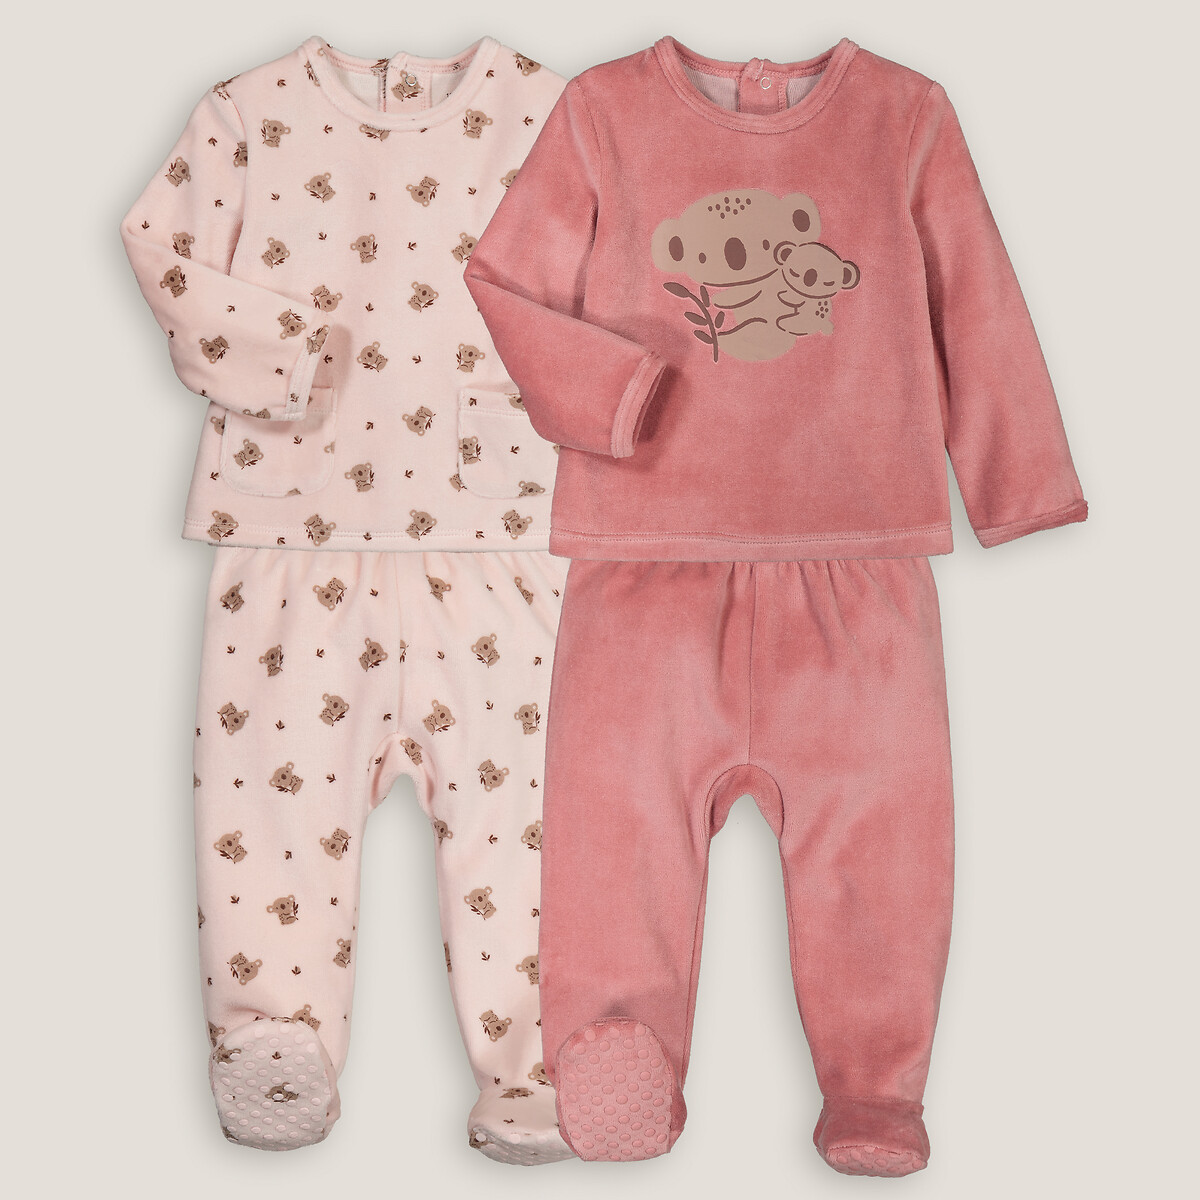 Комплект из двух пижам раздельных из велюра принт коалы 4 года - 102 см розовый комплект из двух вещей из мольтона принт мишка 4 года 102 см серый